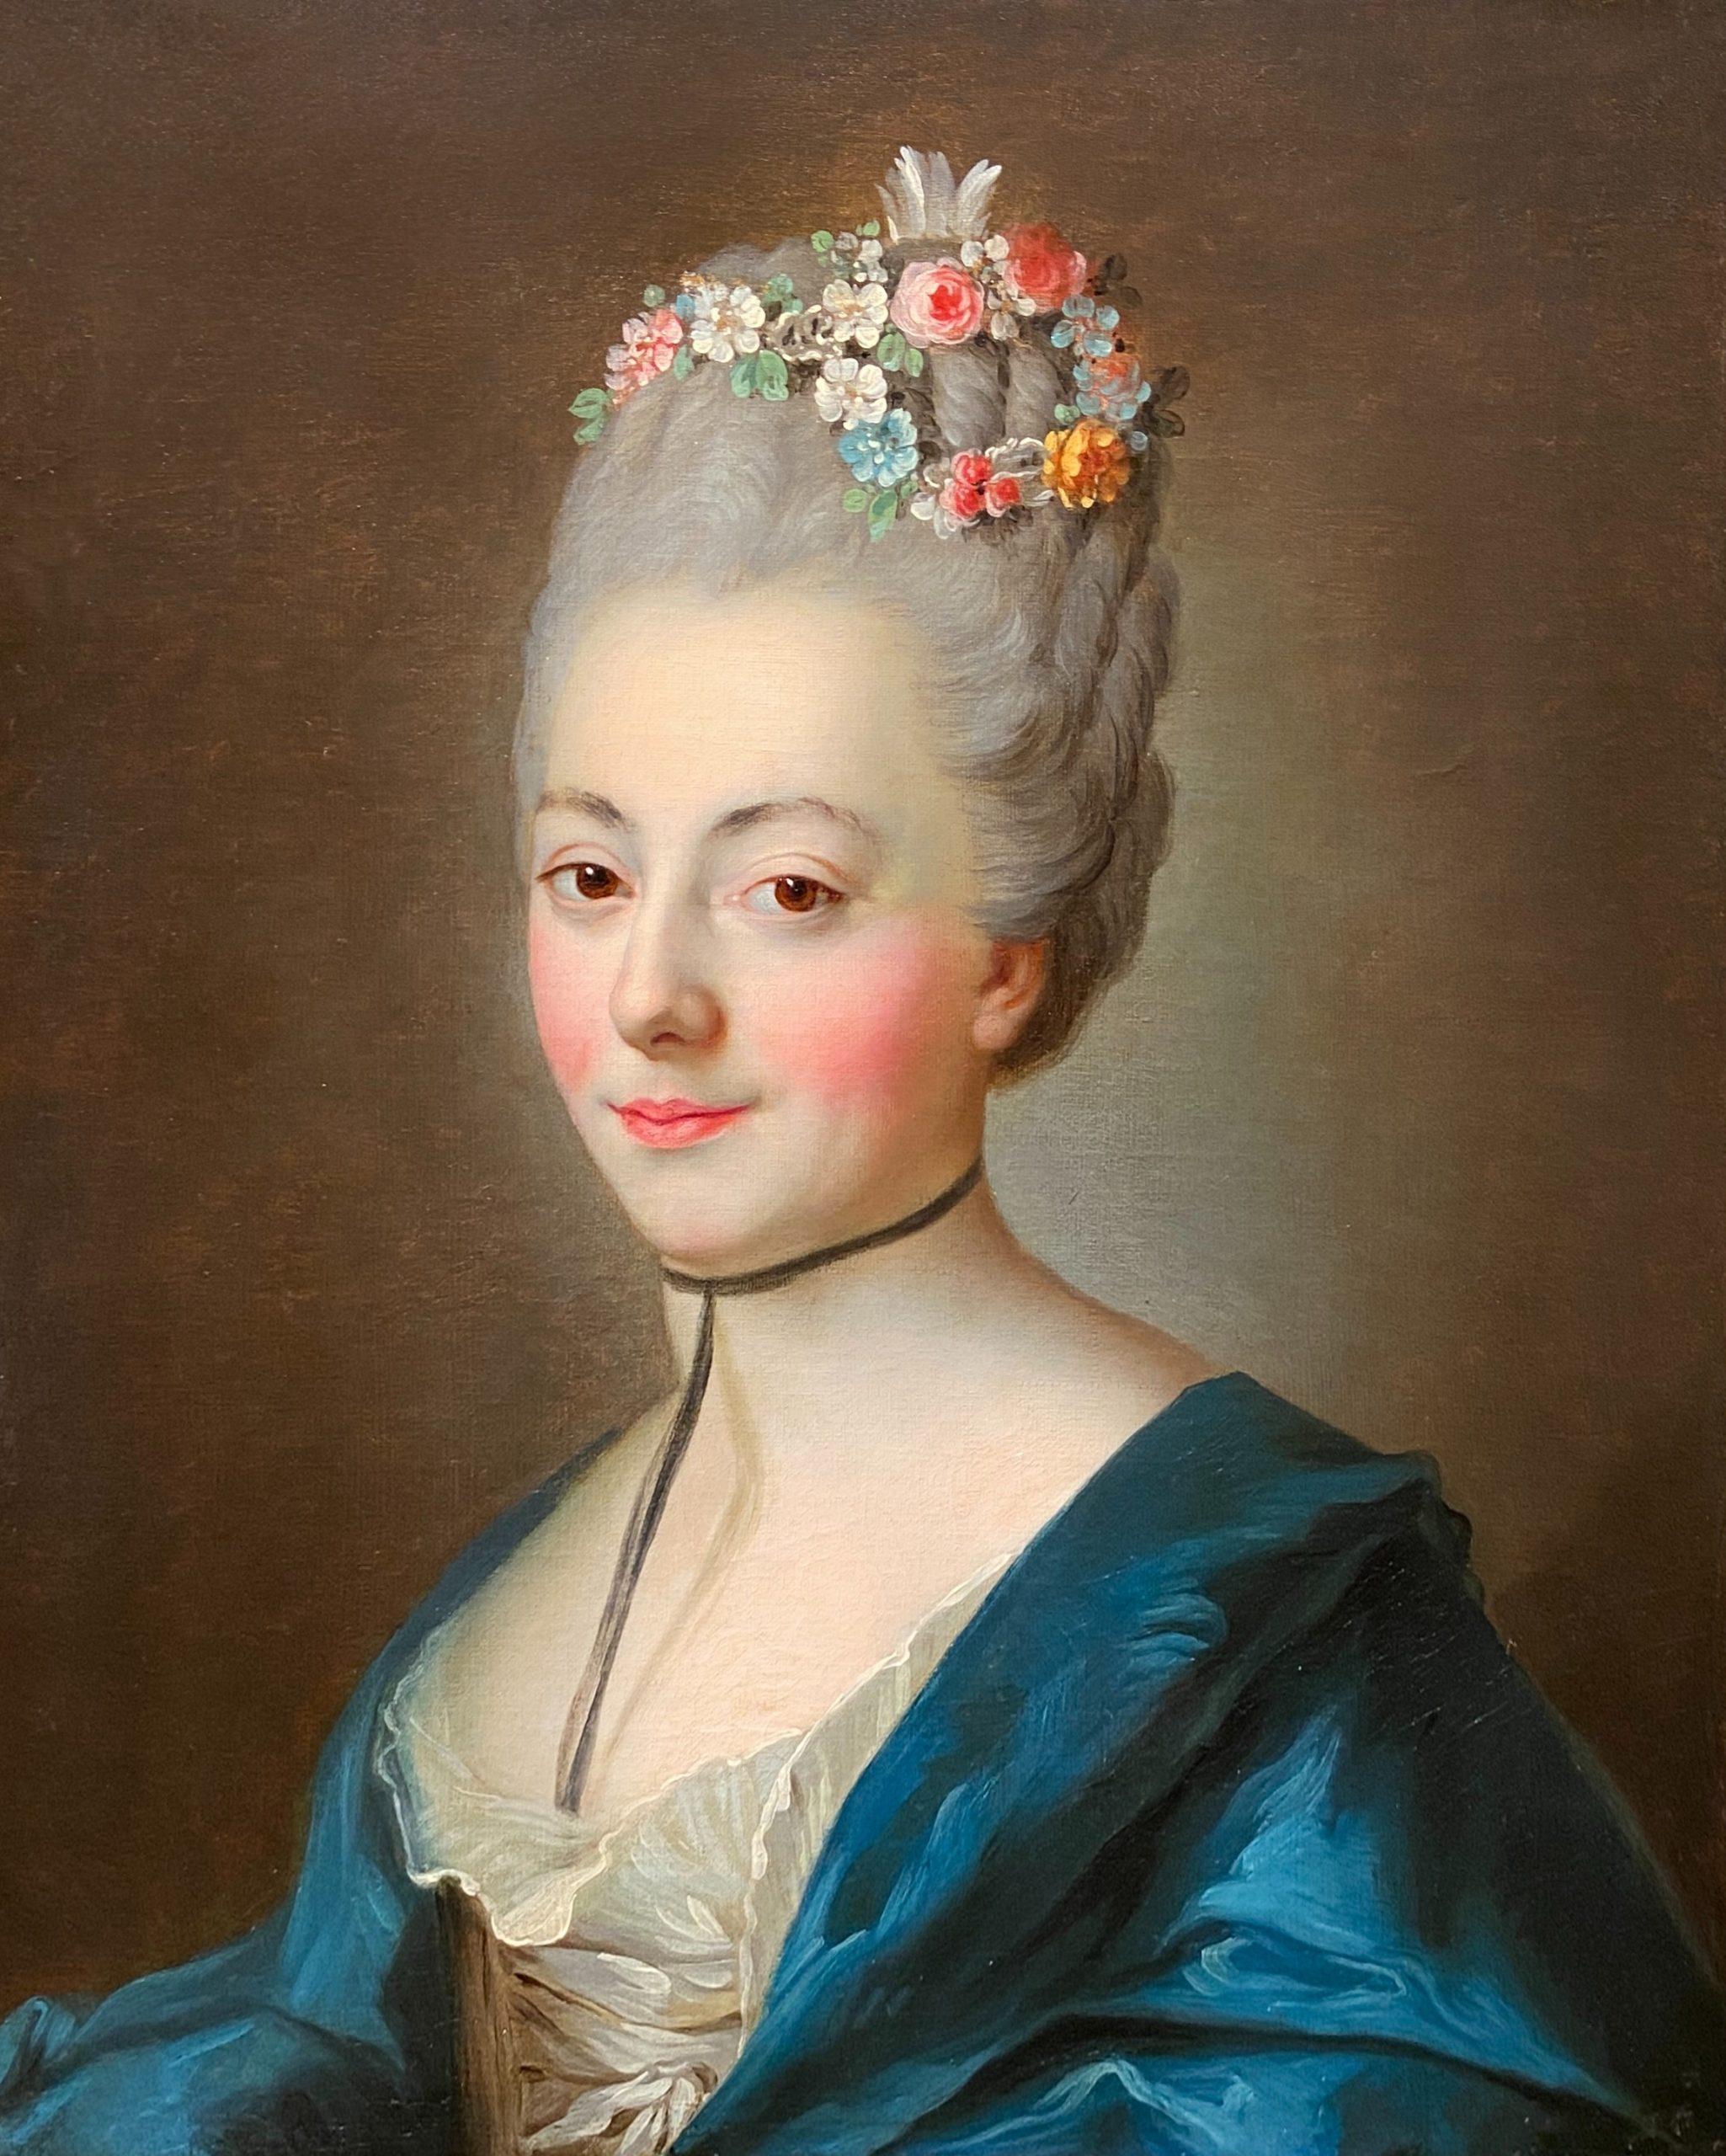 Portrait Painting Alexander Roslin - Portrait d'une femme avec ses cheveux ornés de fleurs, 18ème siècle français